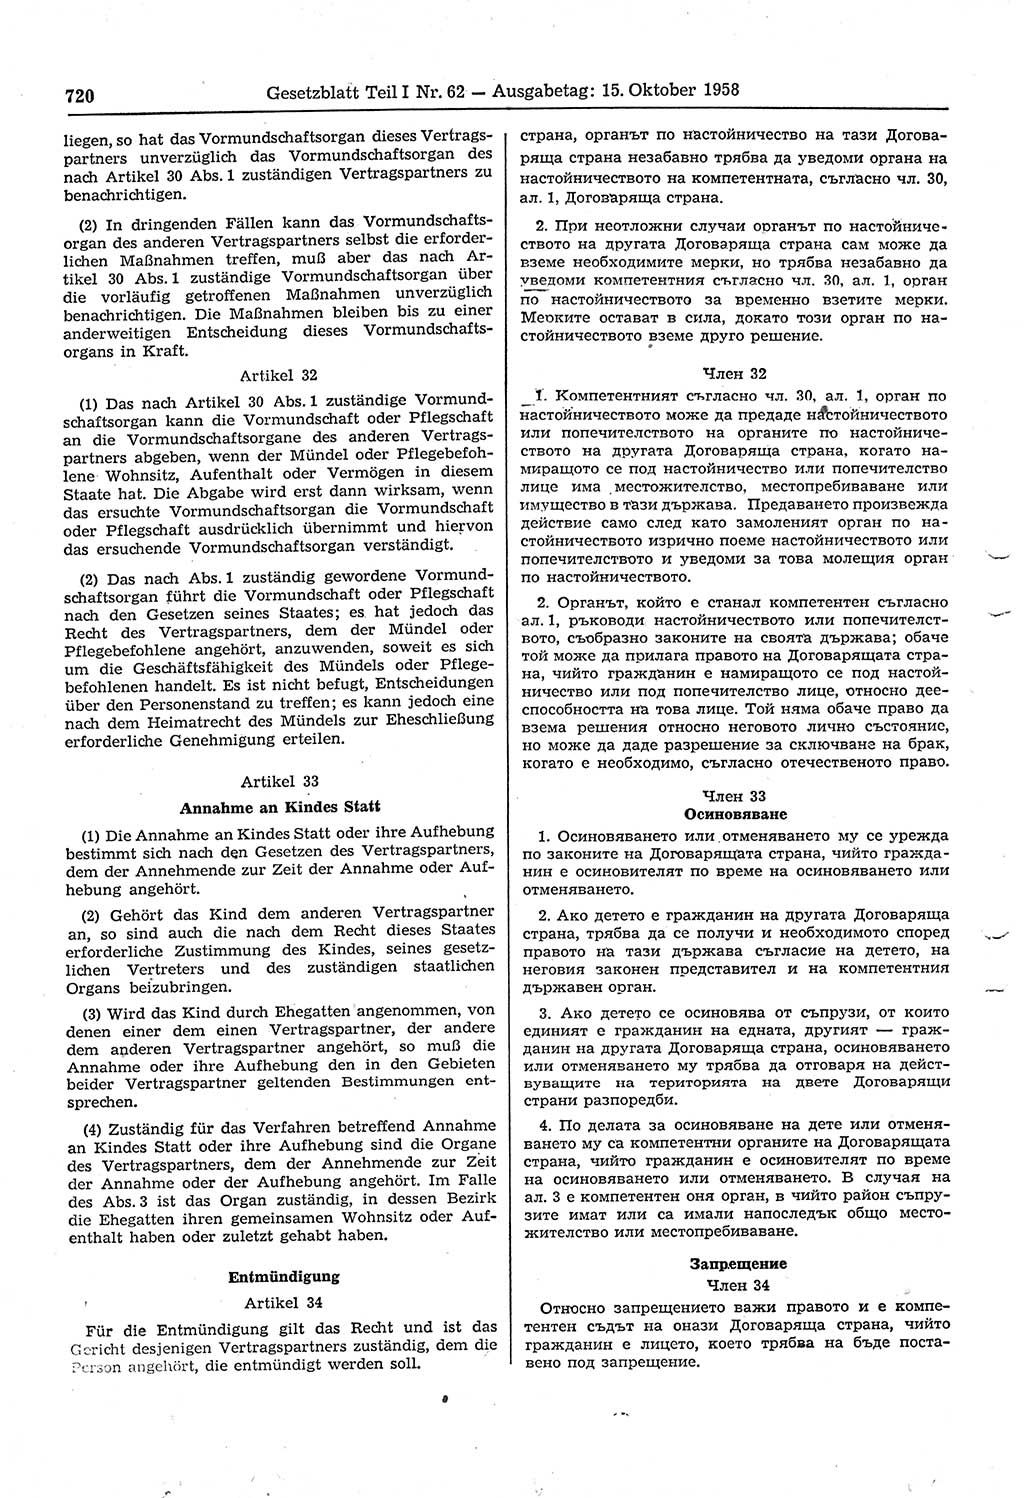 Gesetzblatt (GBl.) der Deutschen Demokratischen Republik (DDR) Teil Ⅰ 1958, Seite 720 (GBl. DDR Ⅰ 1958, S. 720)